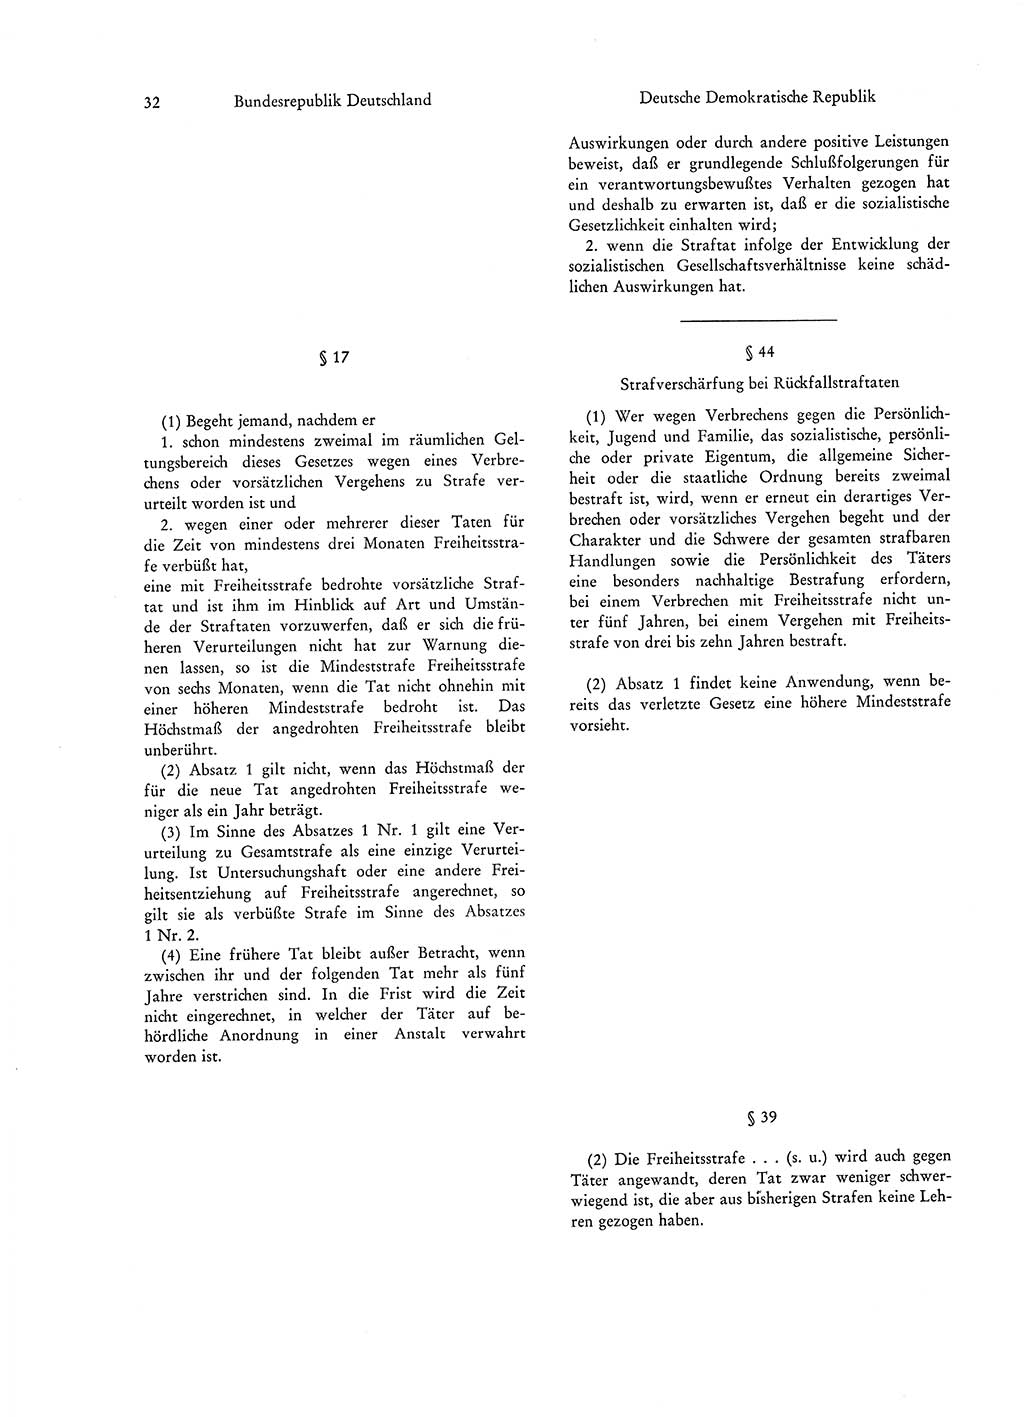 Strafgesetzgebung in Deutschland [Bundesrepublik Deutschland (BRD) und Deutsche Demokratische Republik (DDR)] 1972, Seite 32 (Str.-Ges. Dtl. StGB BRD DDR 1972, S. 32)